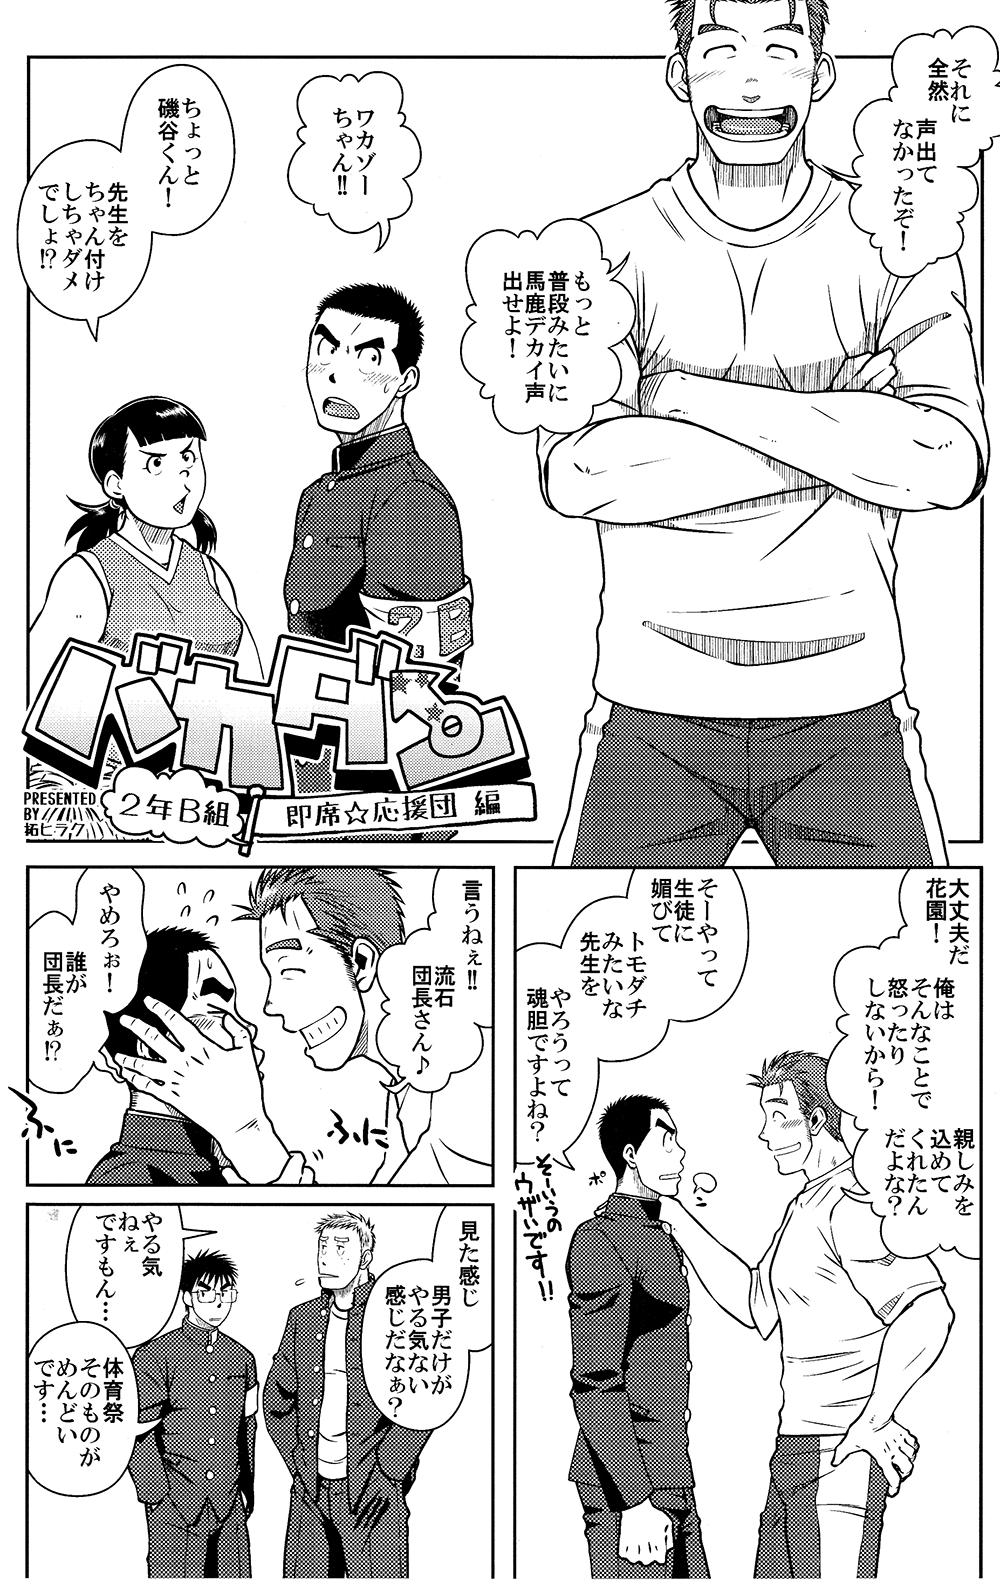 Taiwan Ossu Comic Reverse Cowgirl - Page 3